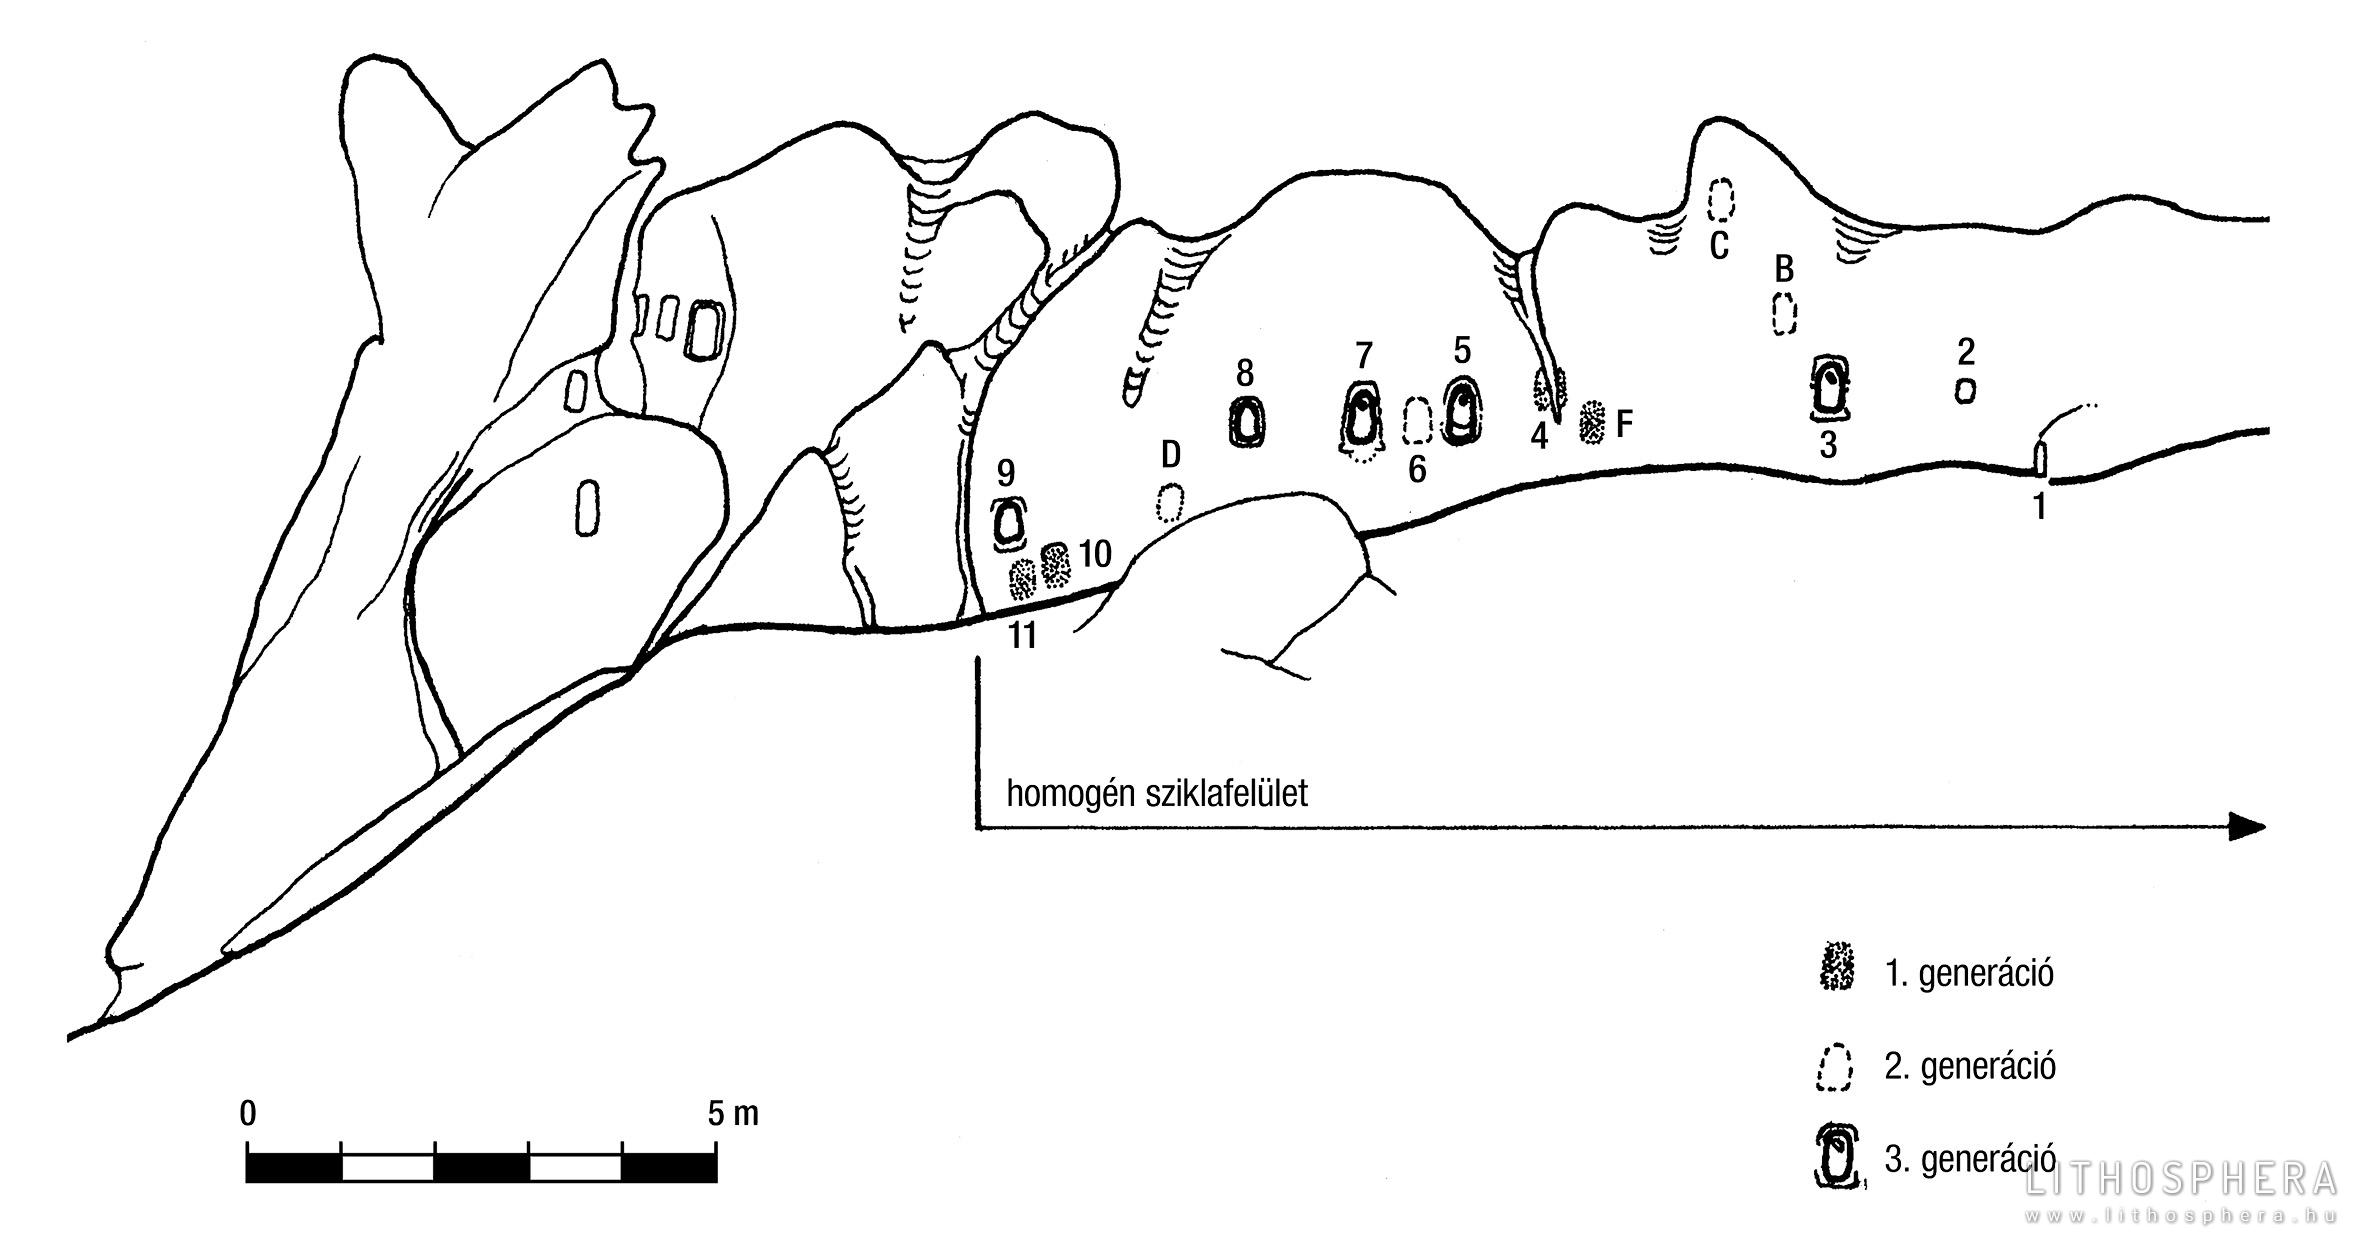 A Nyerges-tetőn lévő sziklavonulat összefüggő, tagolatlan falán sorakozó fülkék alkalmasak egy geomorfológiai megfigyelésen alapuló periodizációra, relatív kronológia kialakítására